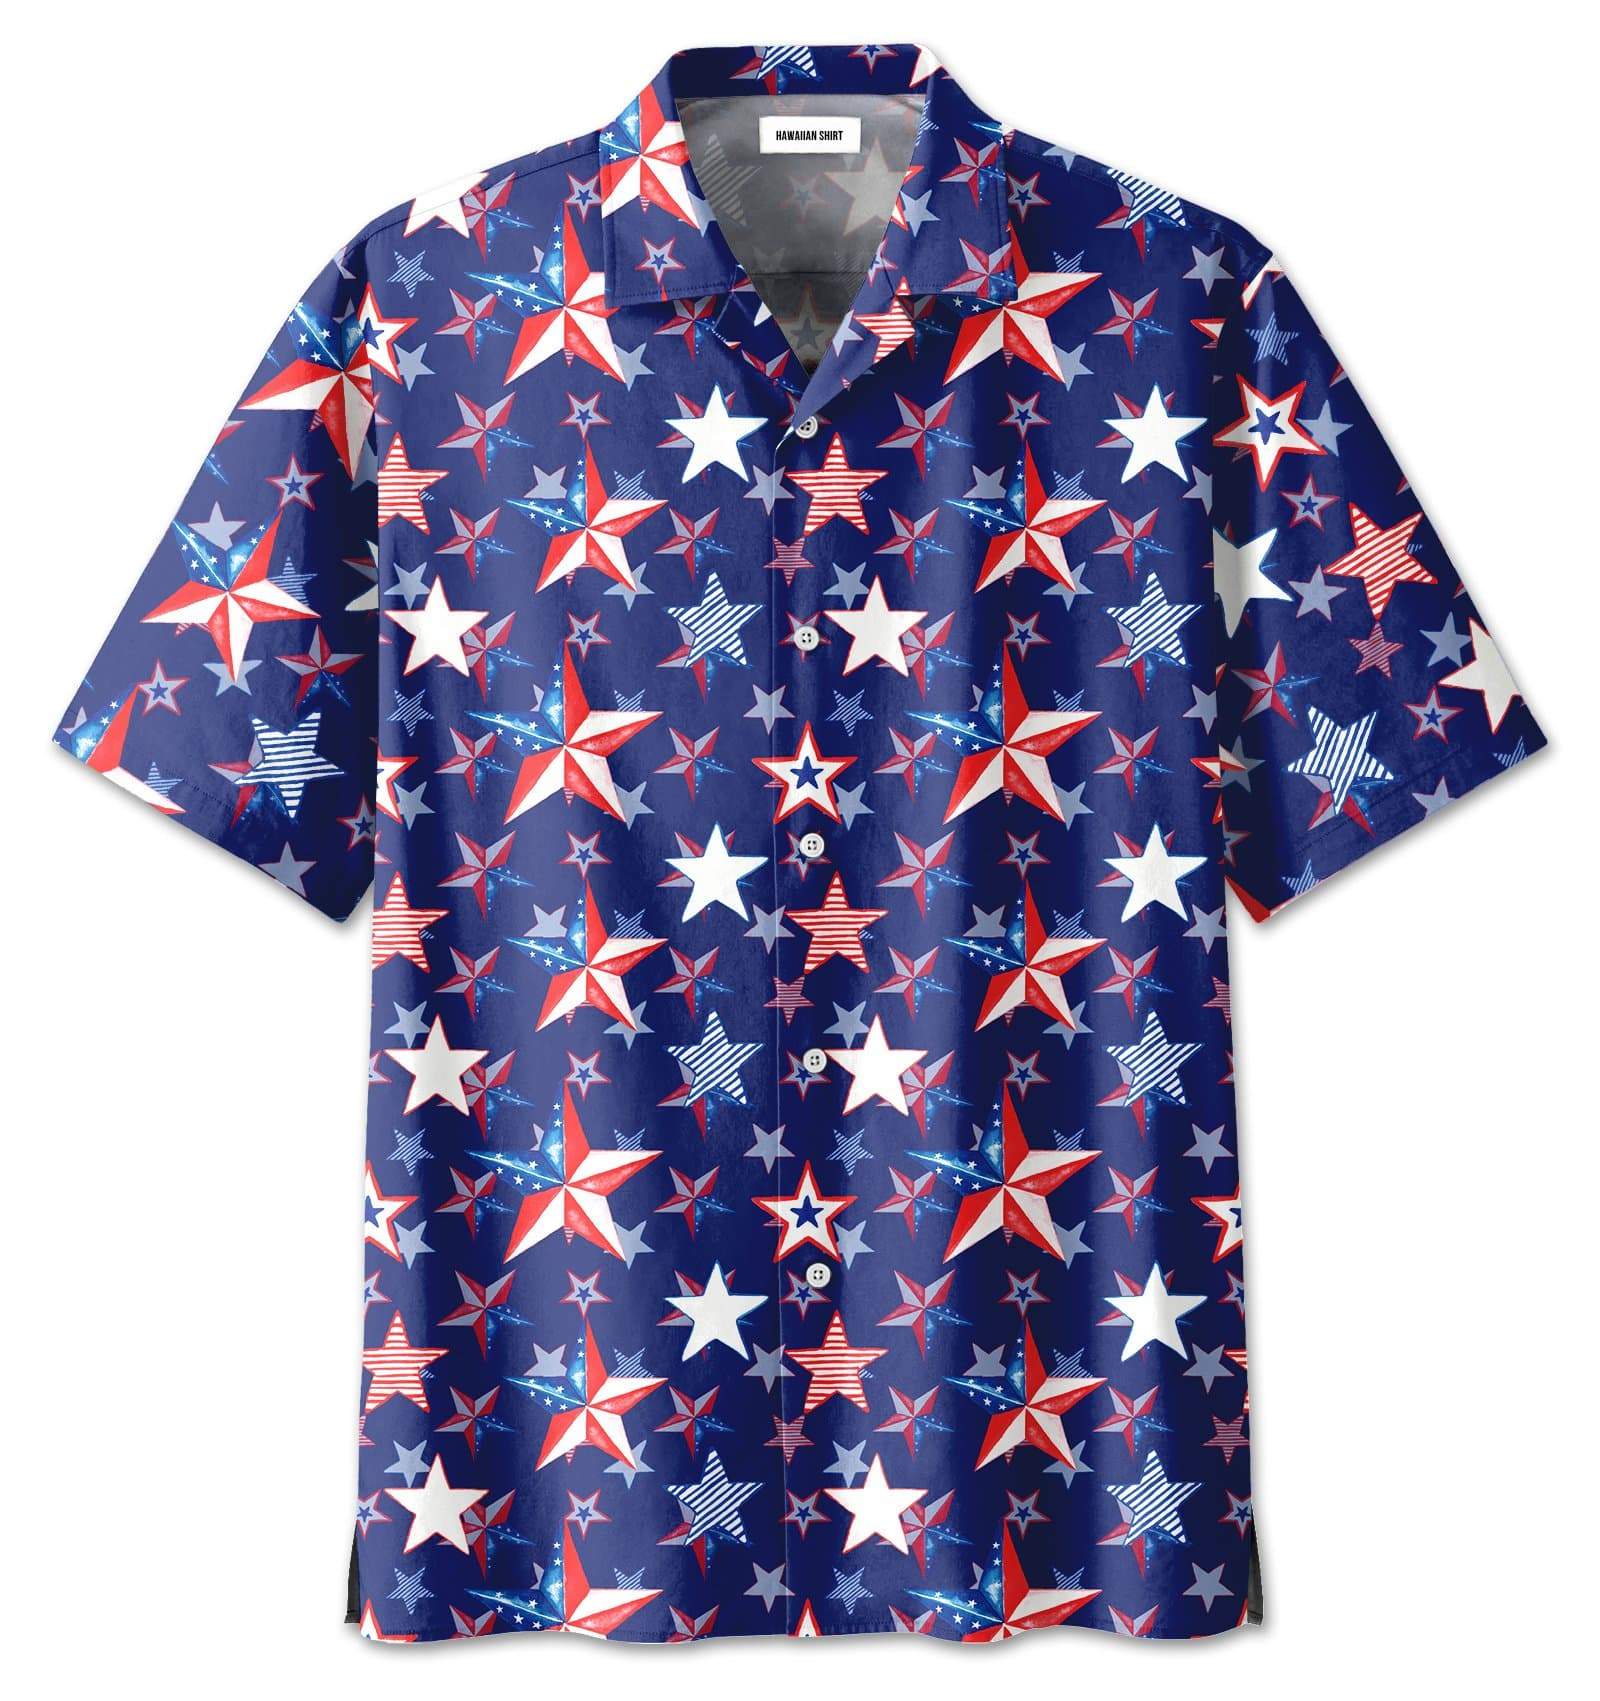 kurobase-4th-of-july-us-flag-star-pattern-hawaiian-shirts-13621dh.jpg